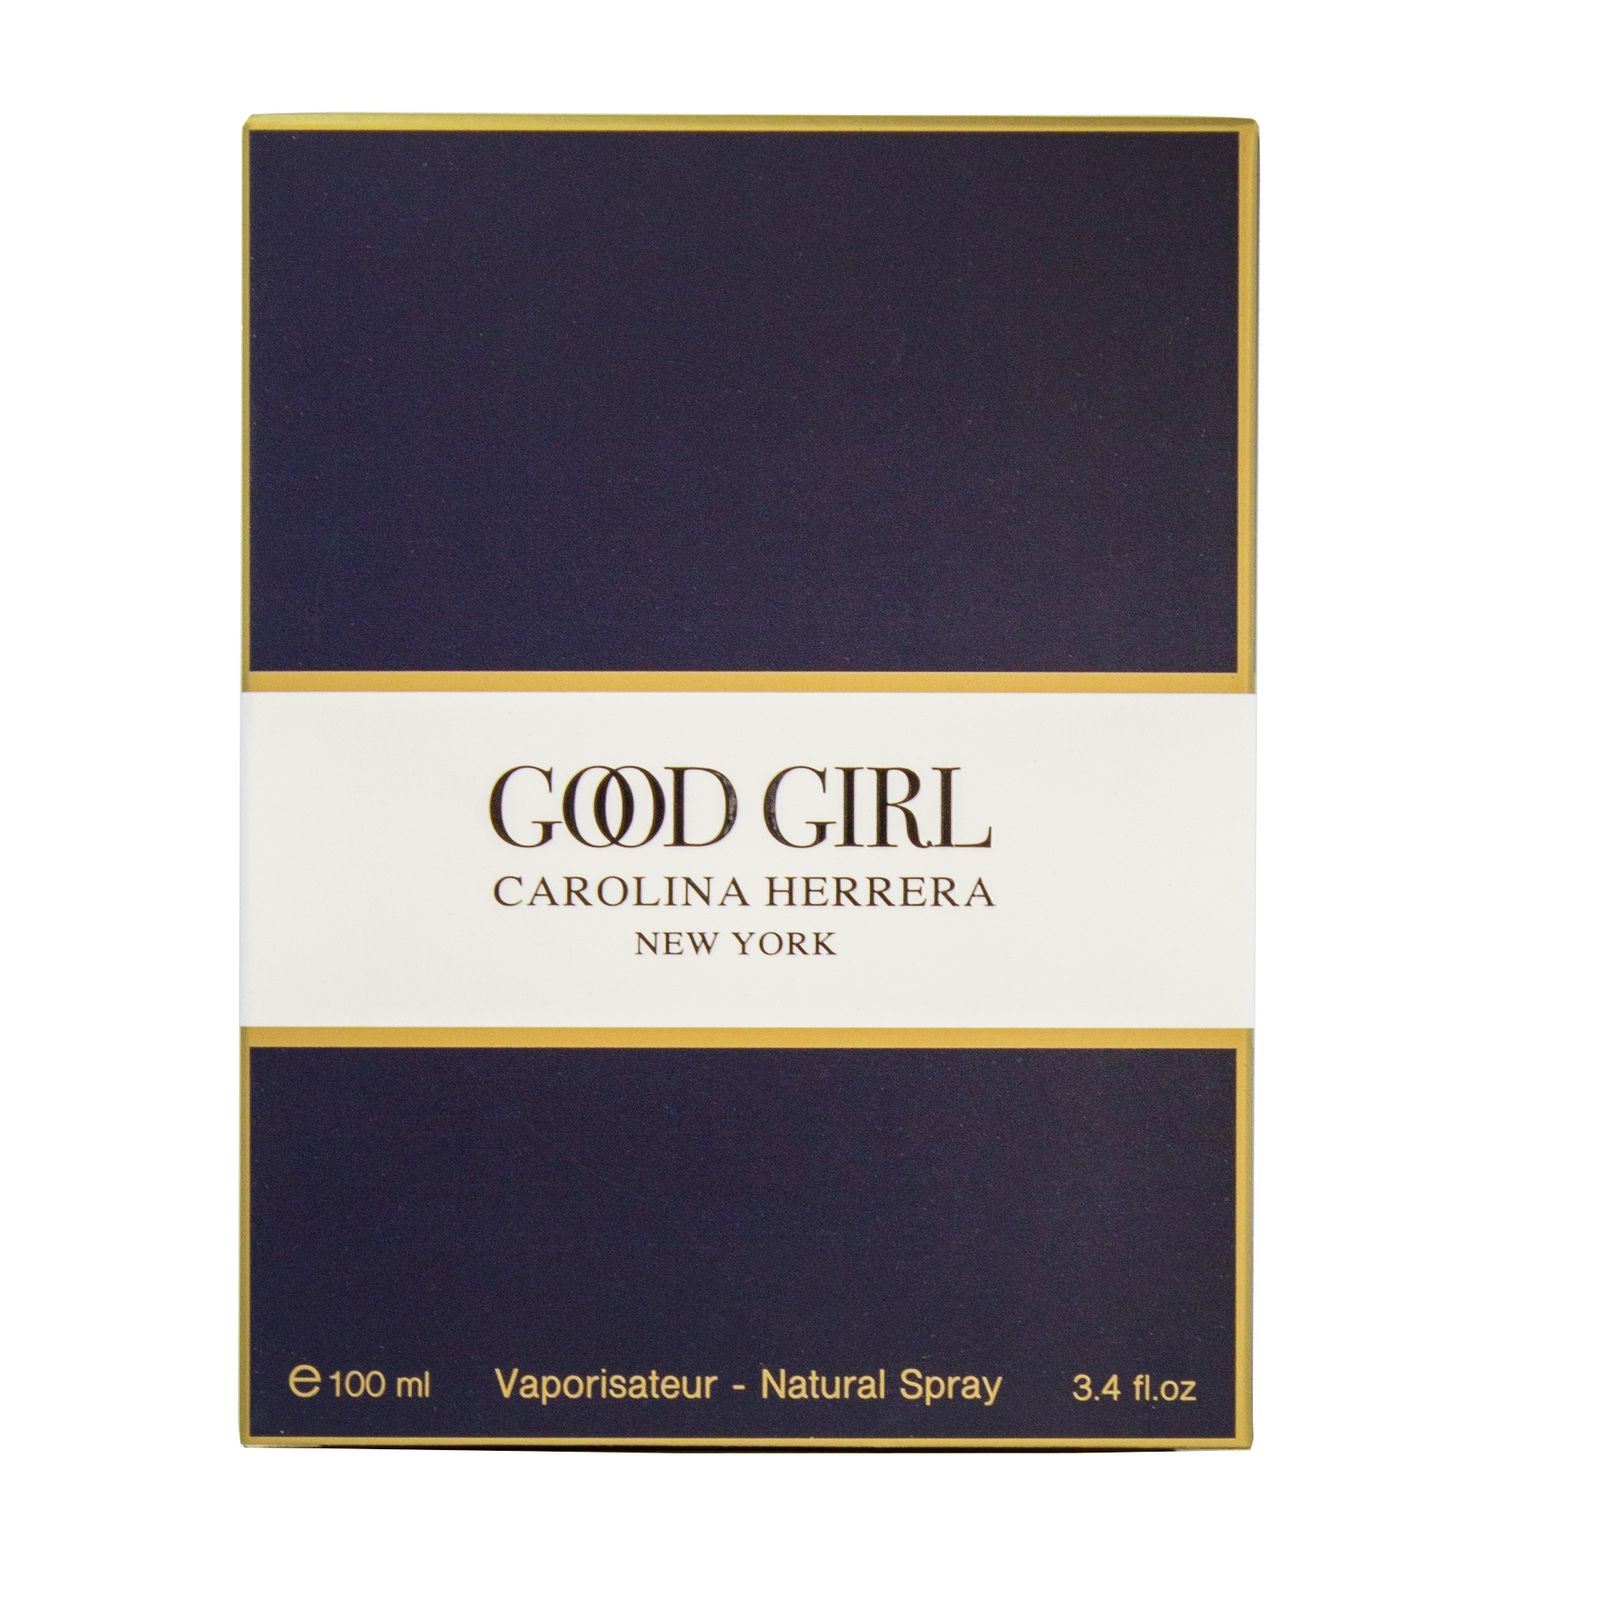 ادو تویلت زنانه پرستیژ مدل Good Girl حجم 100 میلی لیتر -  - 3